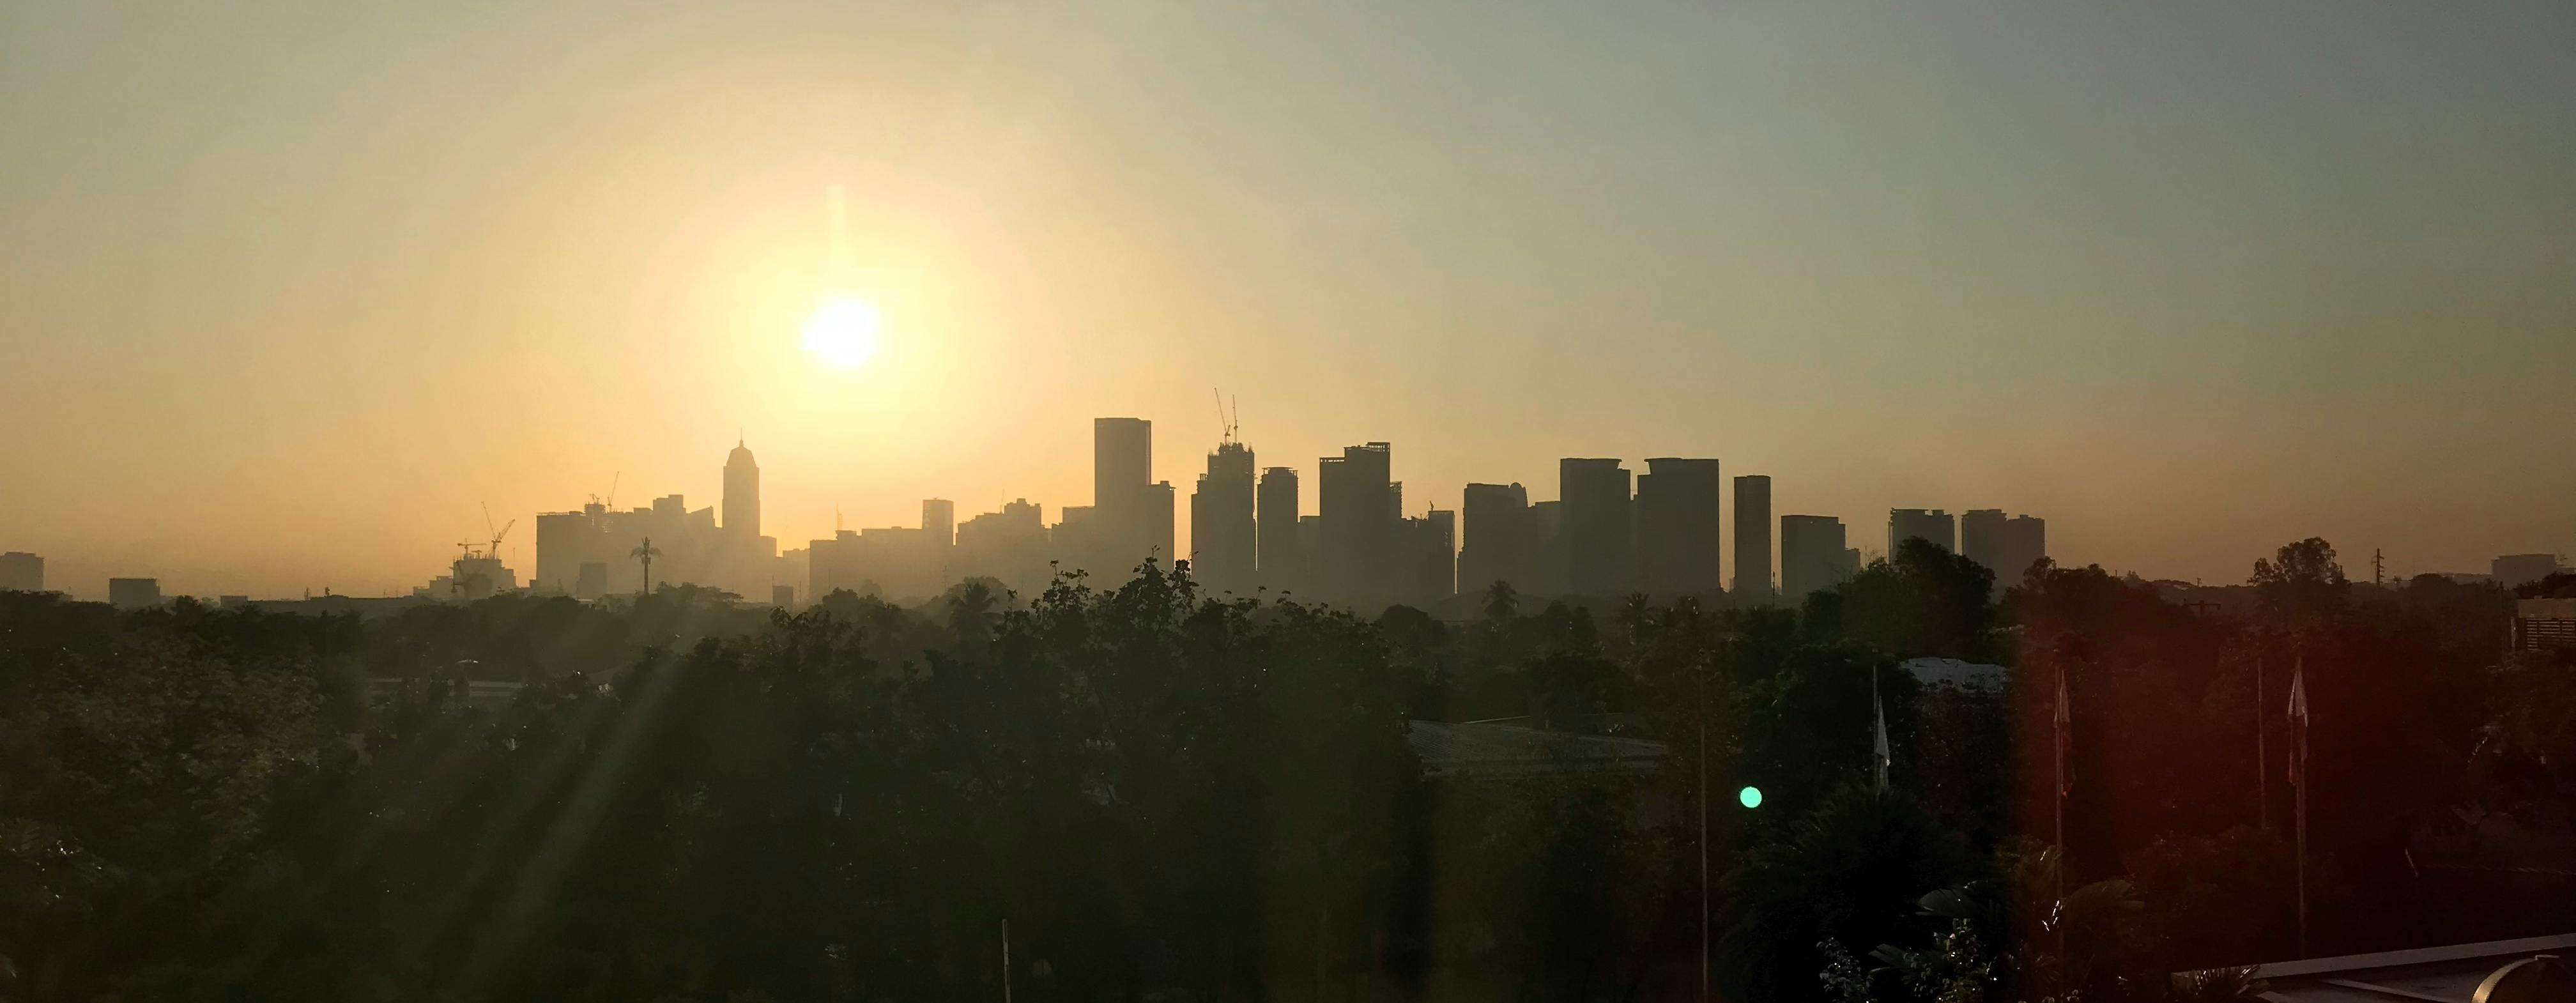 Free stock photo of city, morning, sunrise